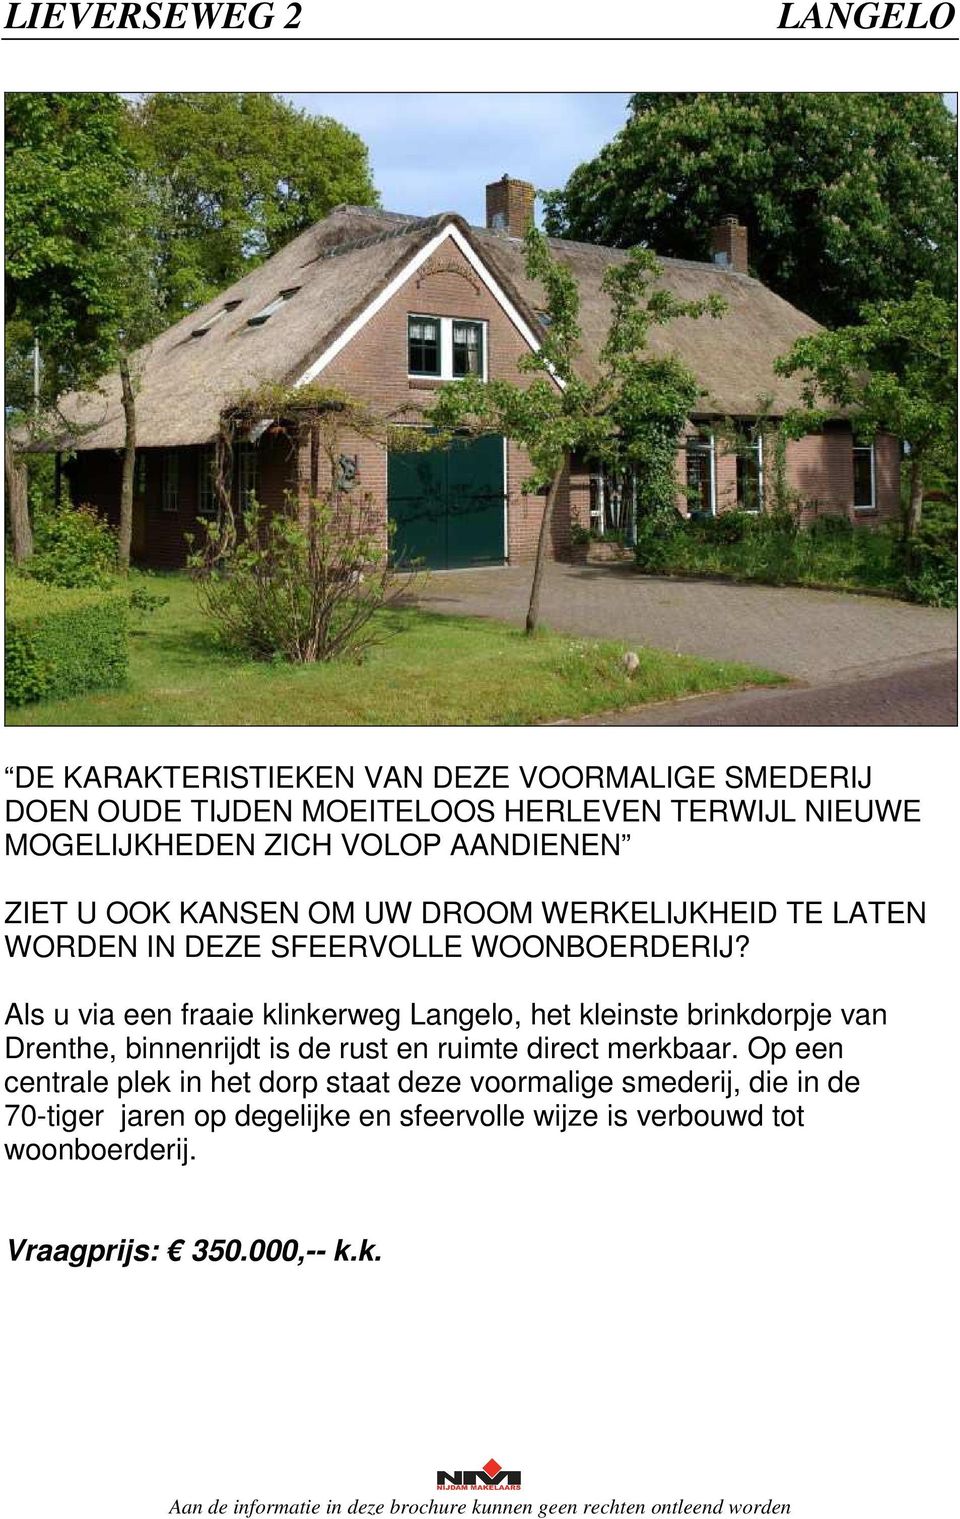 Als u via een fraaie klinkerweg Langelo, het kleinste brinkdorpje van Drenthe, binnenrijdt is de rust en ruimte direct merkbaar.